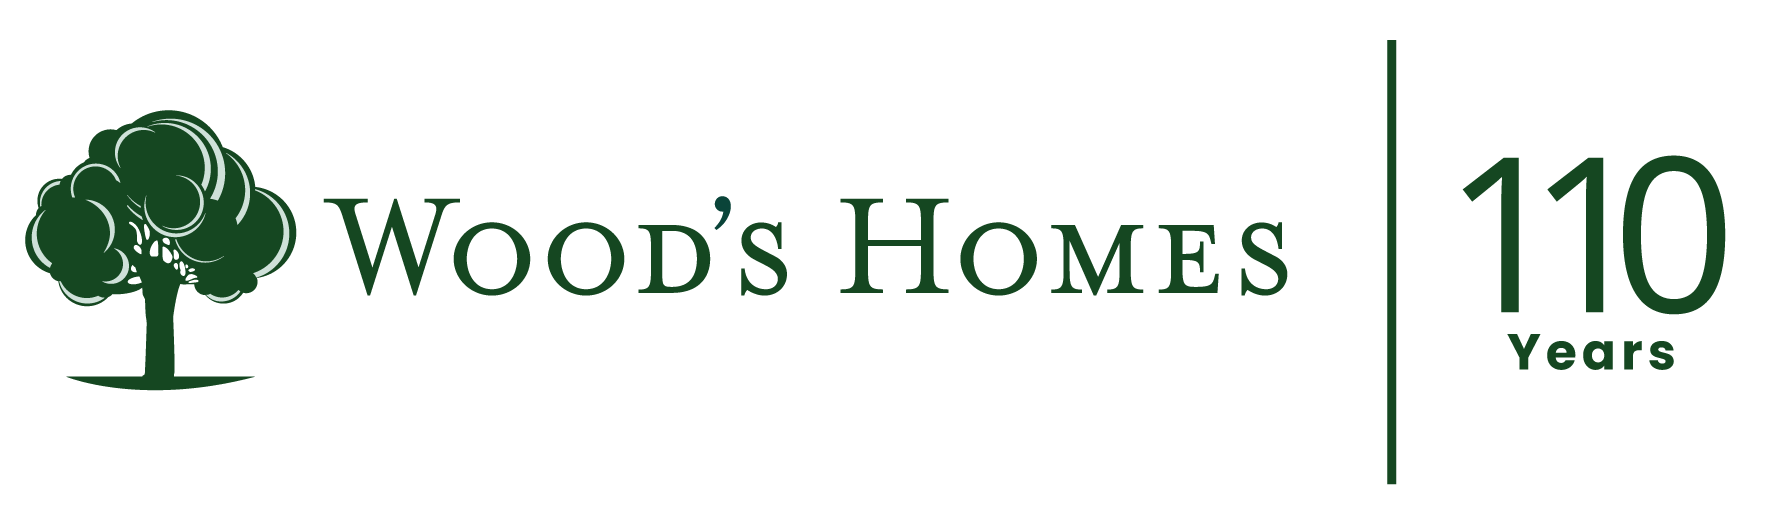 WoodsHome 110 Years logo